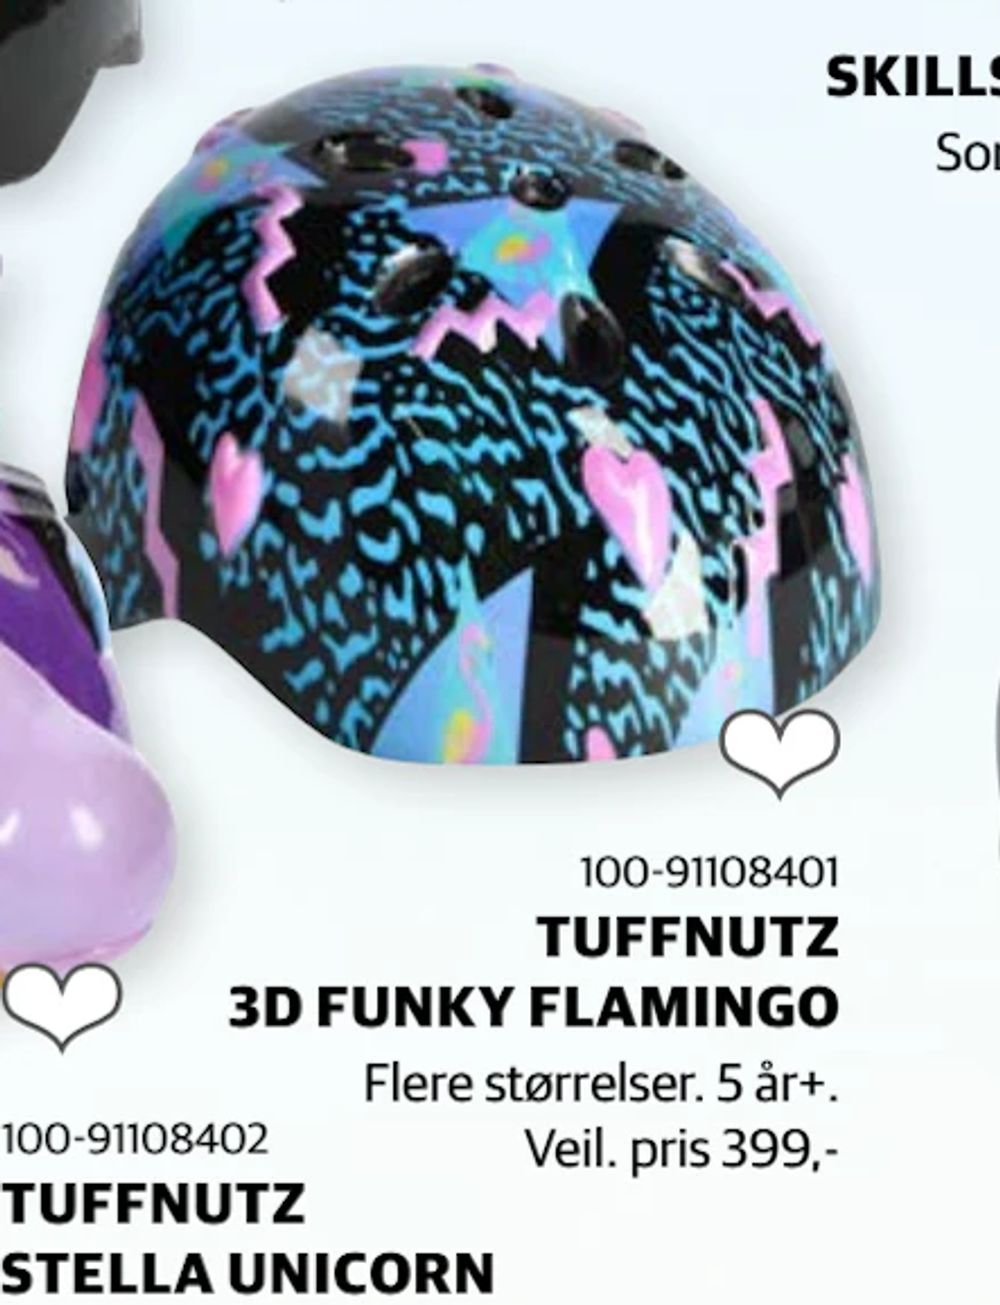 Tilbud på TUFFNUTZ 3D FUNKY FLAMINGO fra Lekia til 299 kr